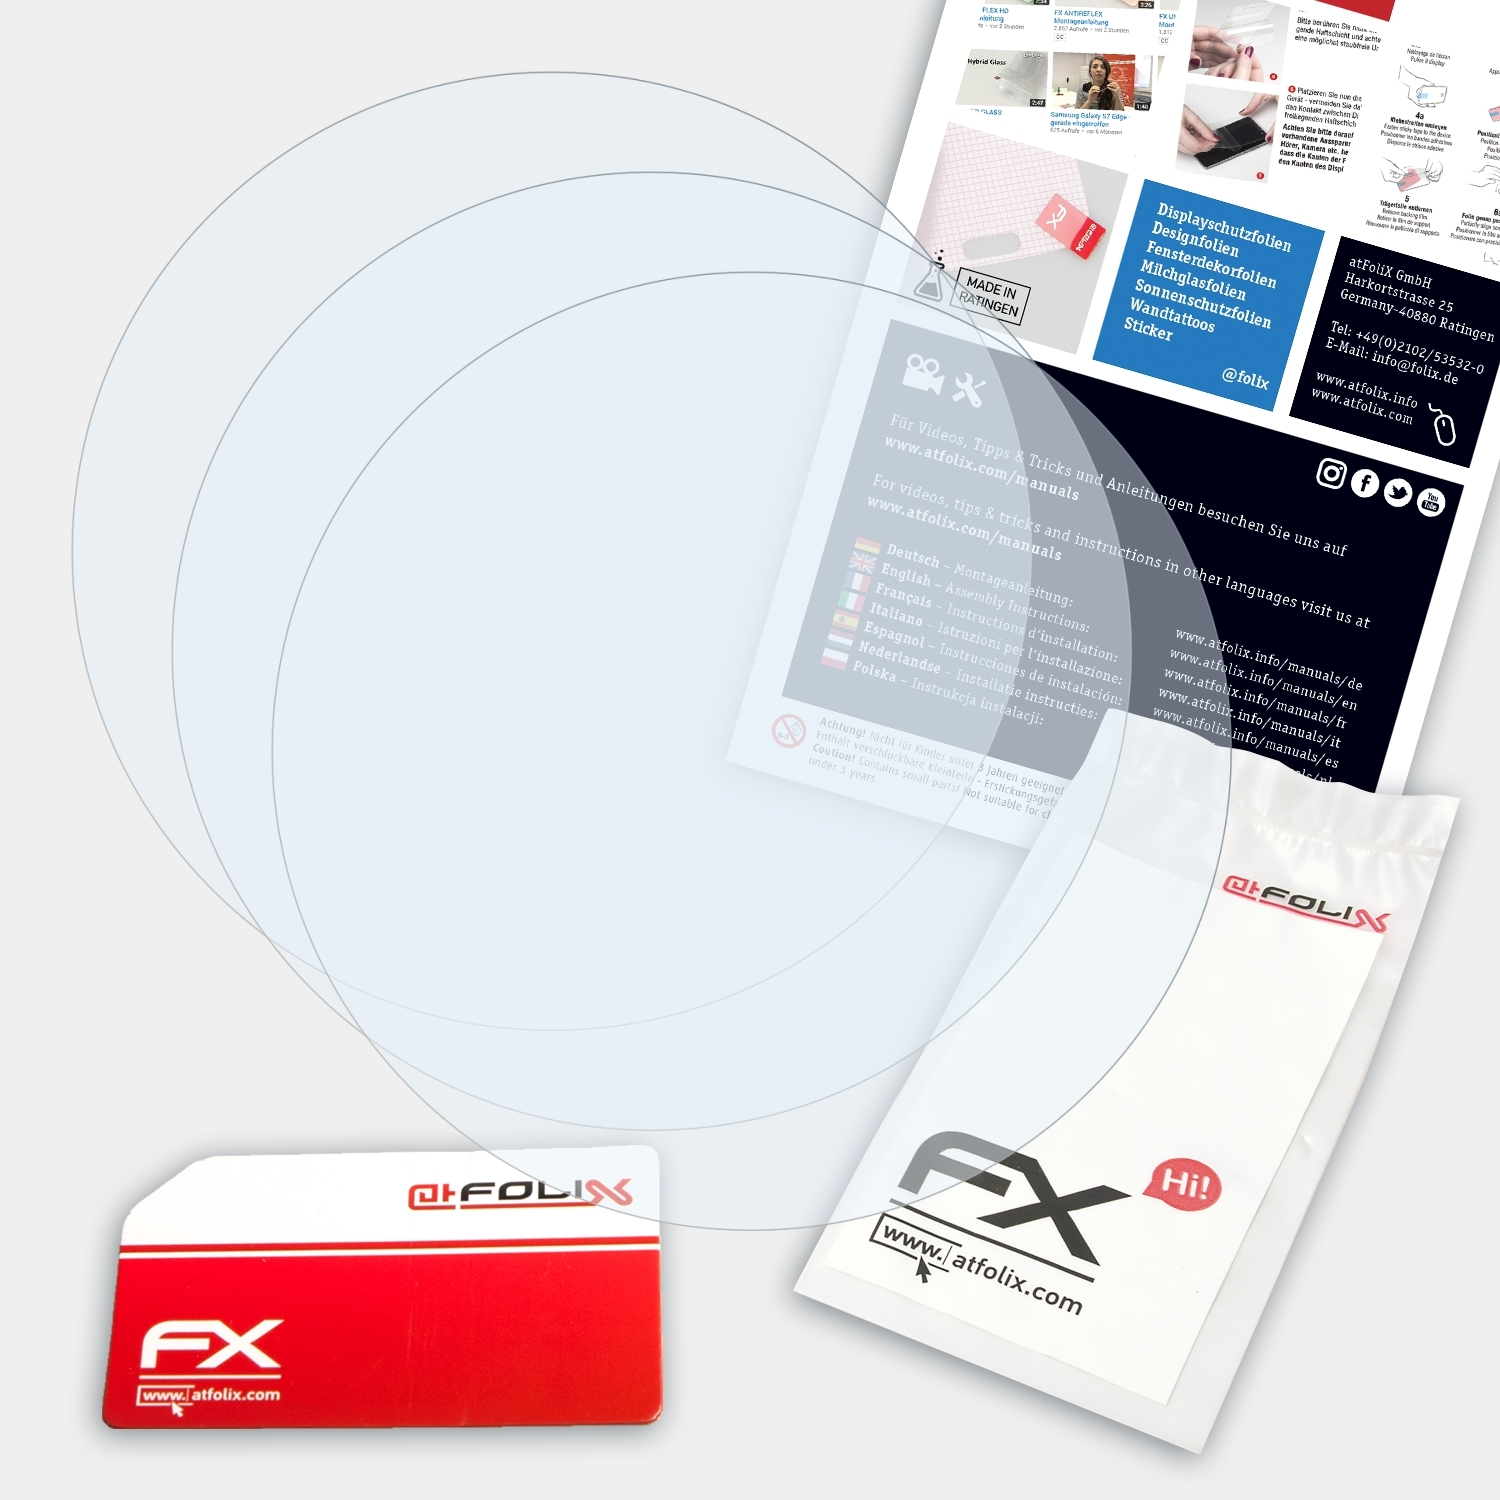 ATFOLIX 3x FX-Clear Displayschutz(für GI Garmin 275)